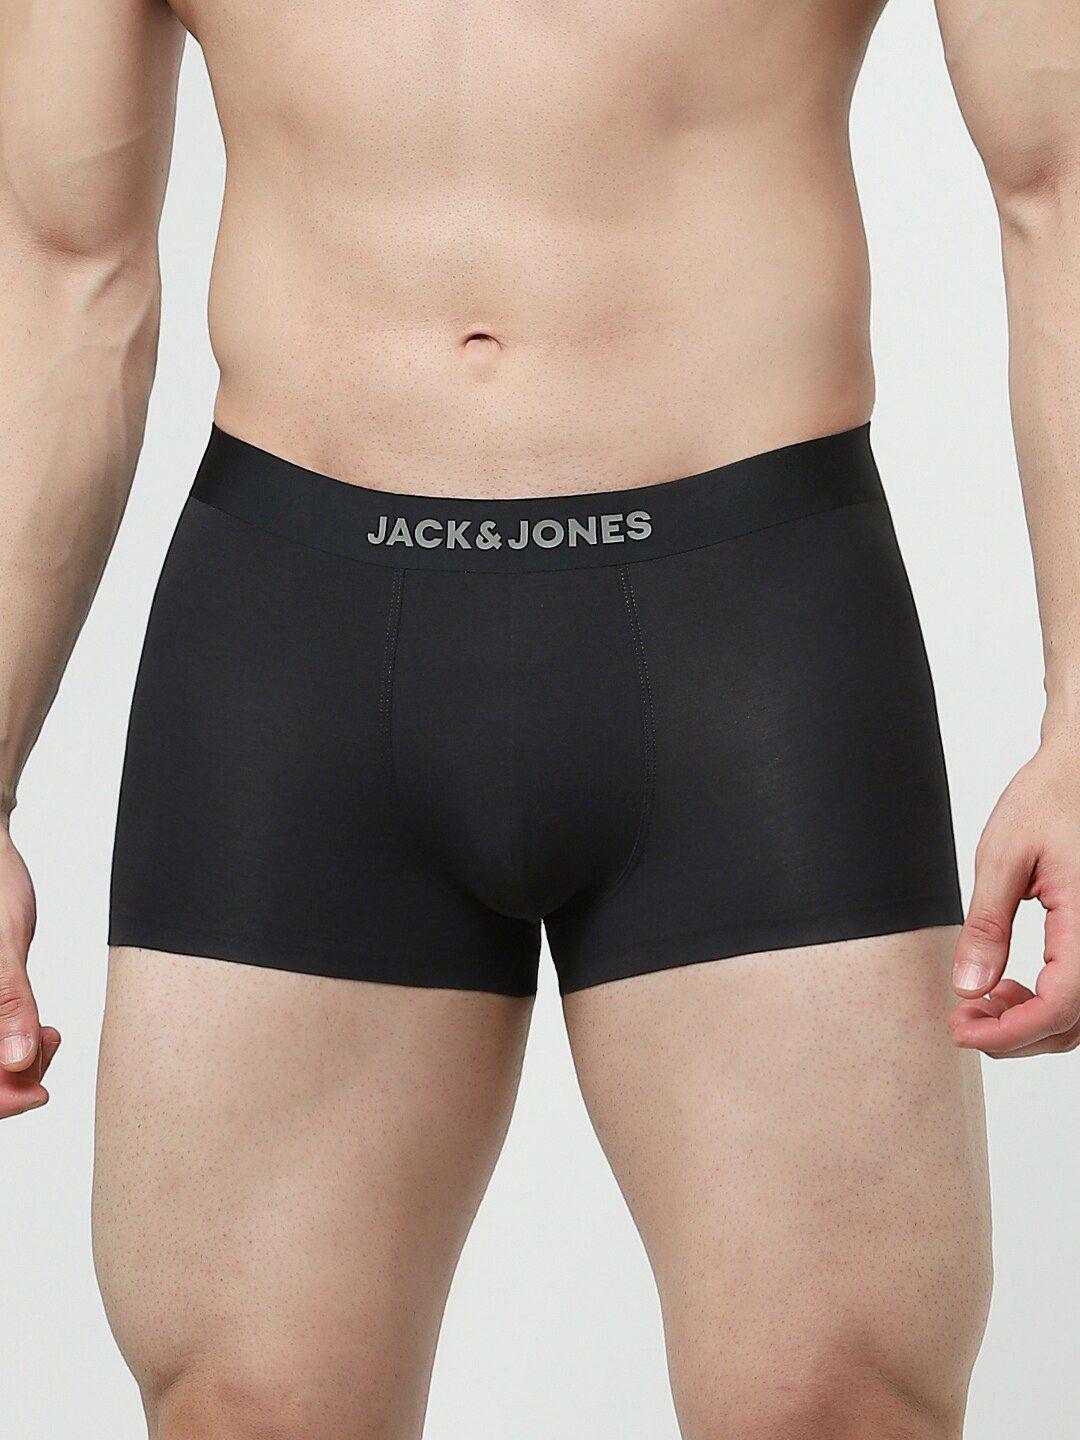 jack-&-jones-men-mid-rise-trunks-1310051021